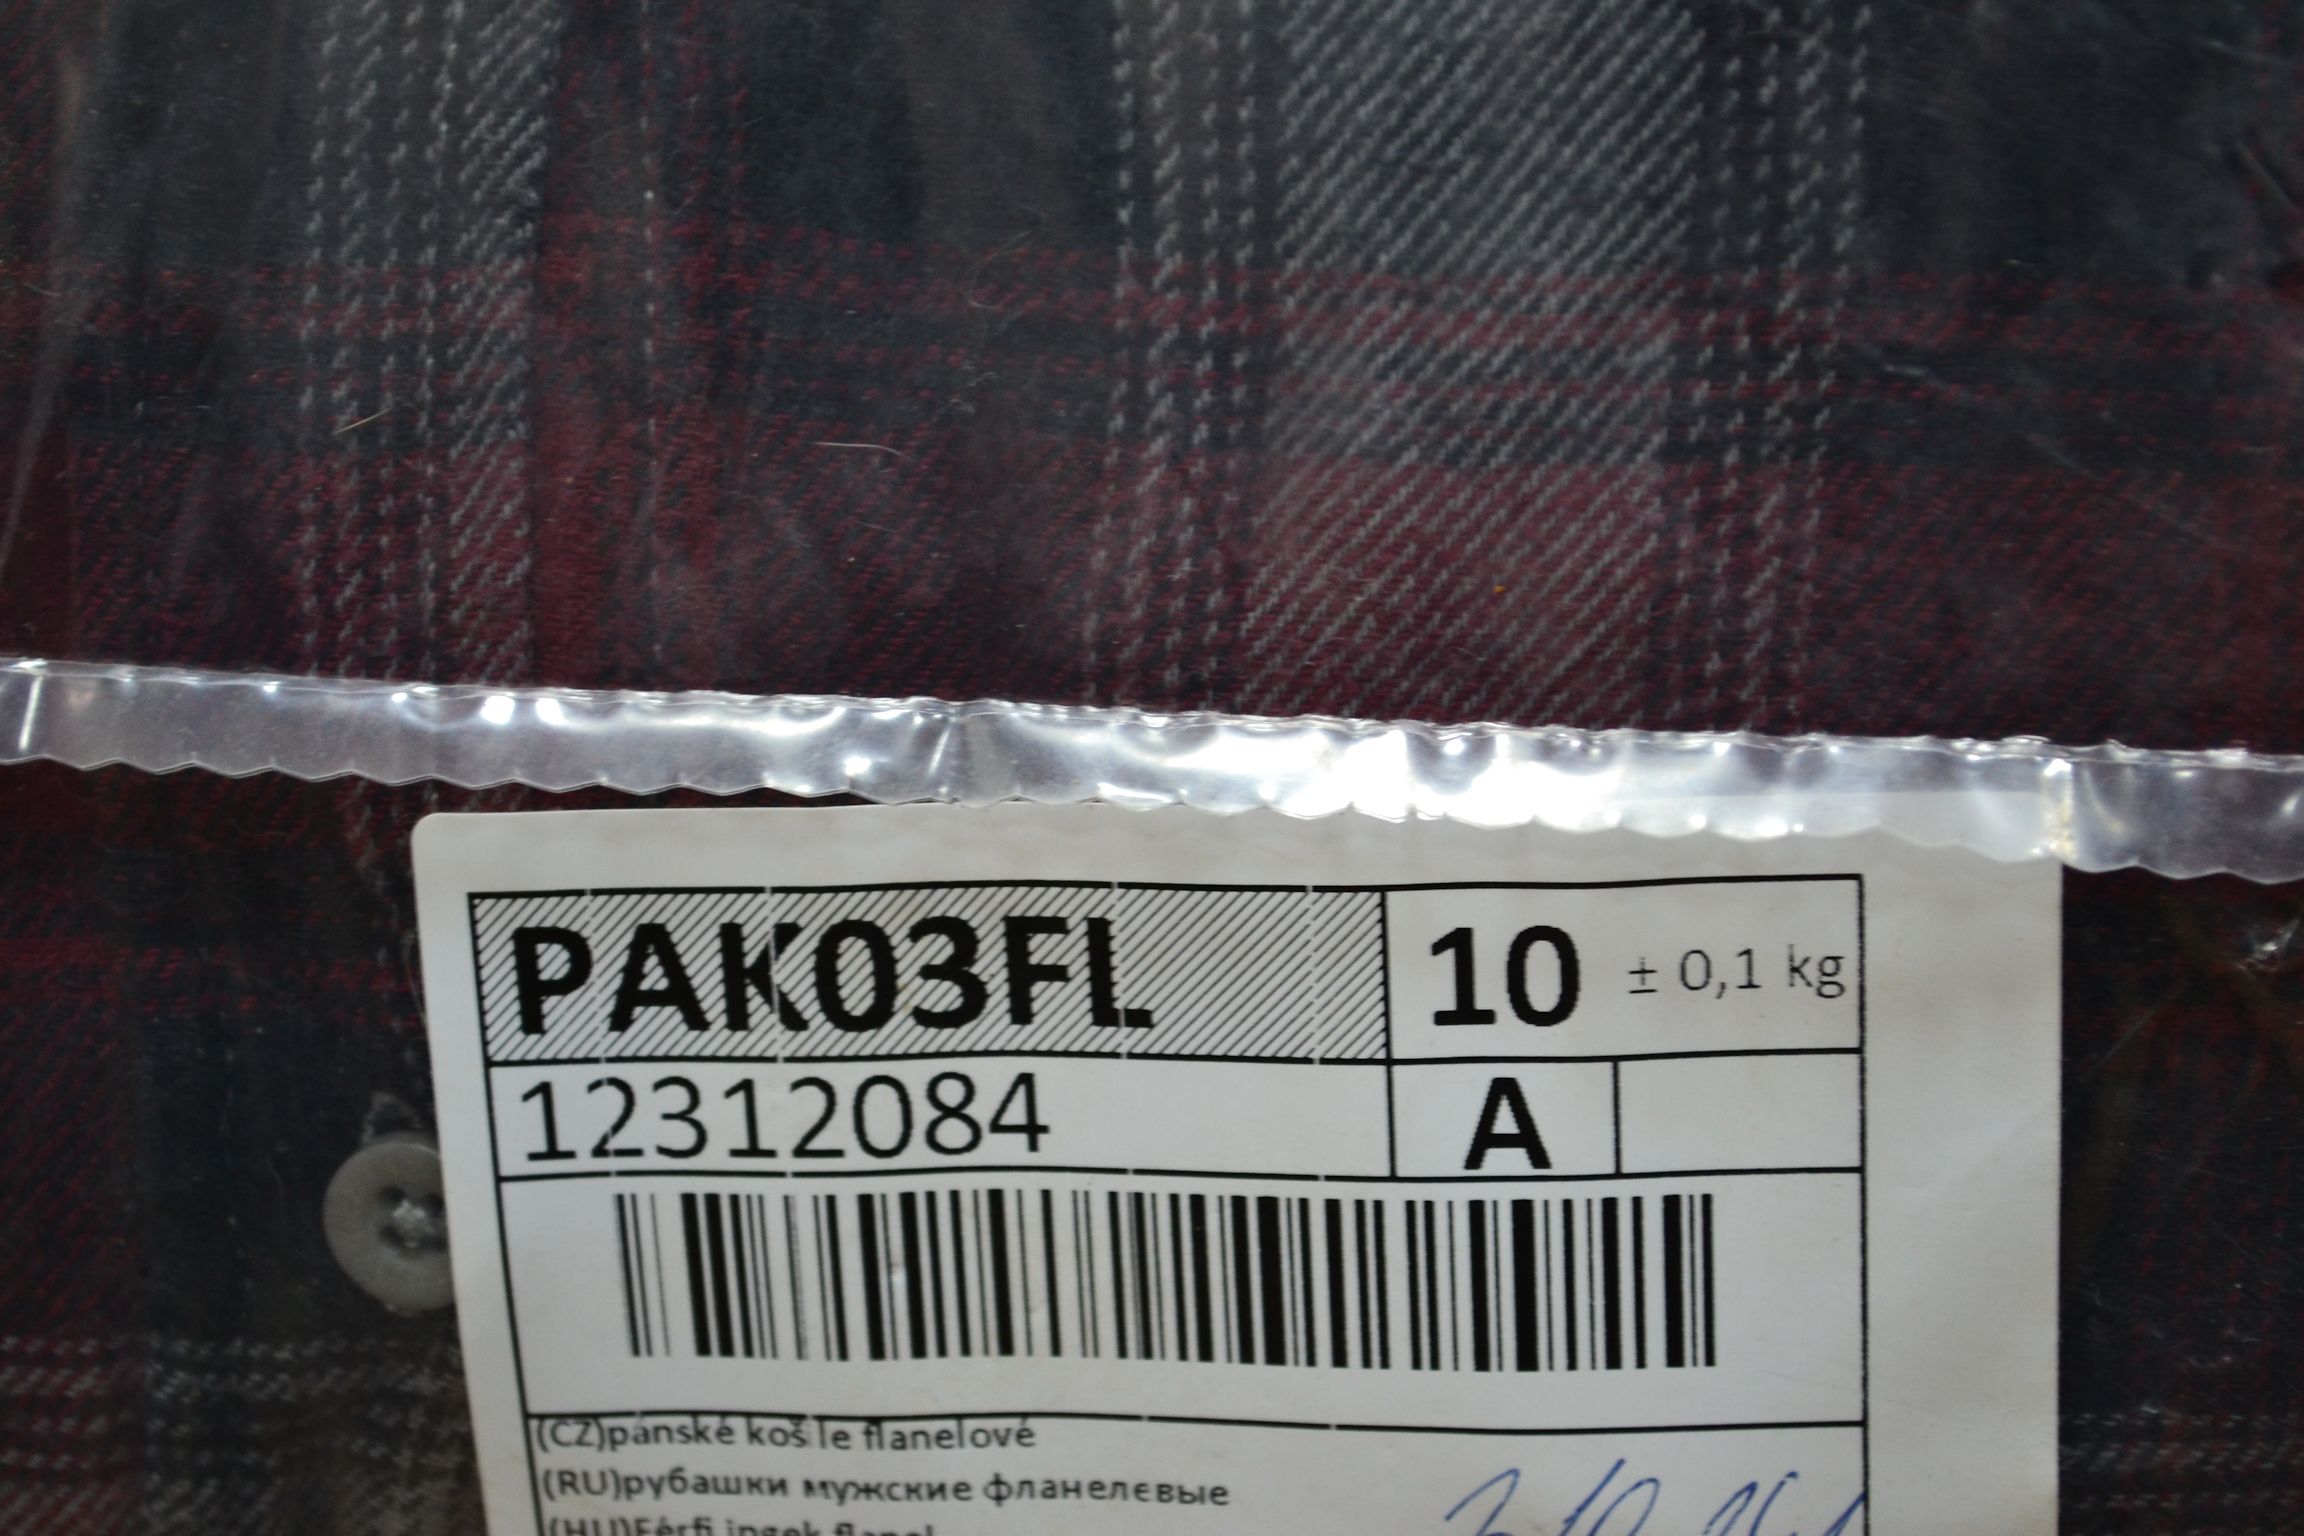 PAK03FL Мужские рубашки теплые фланель; код мешка 12312084